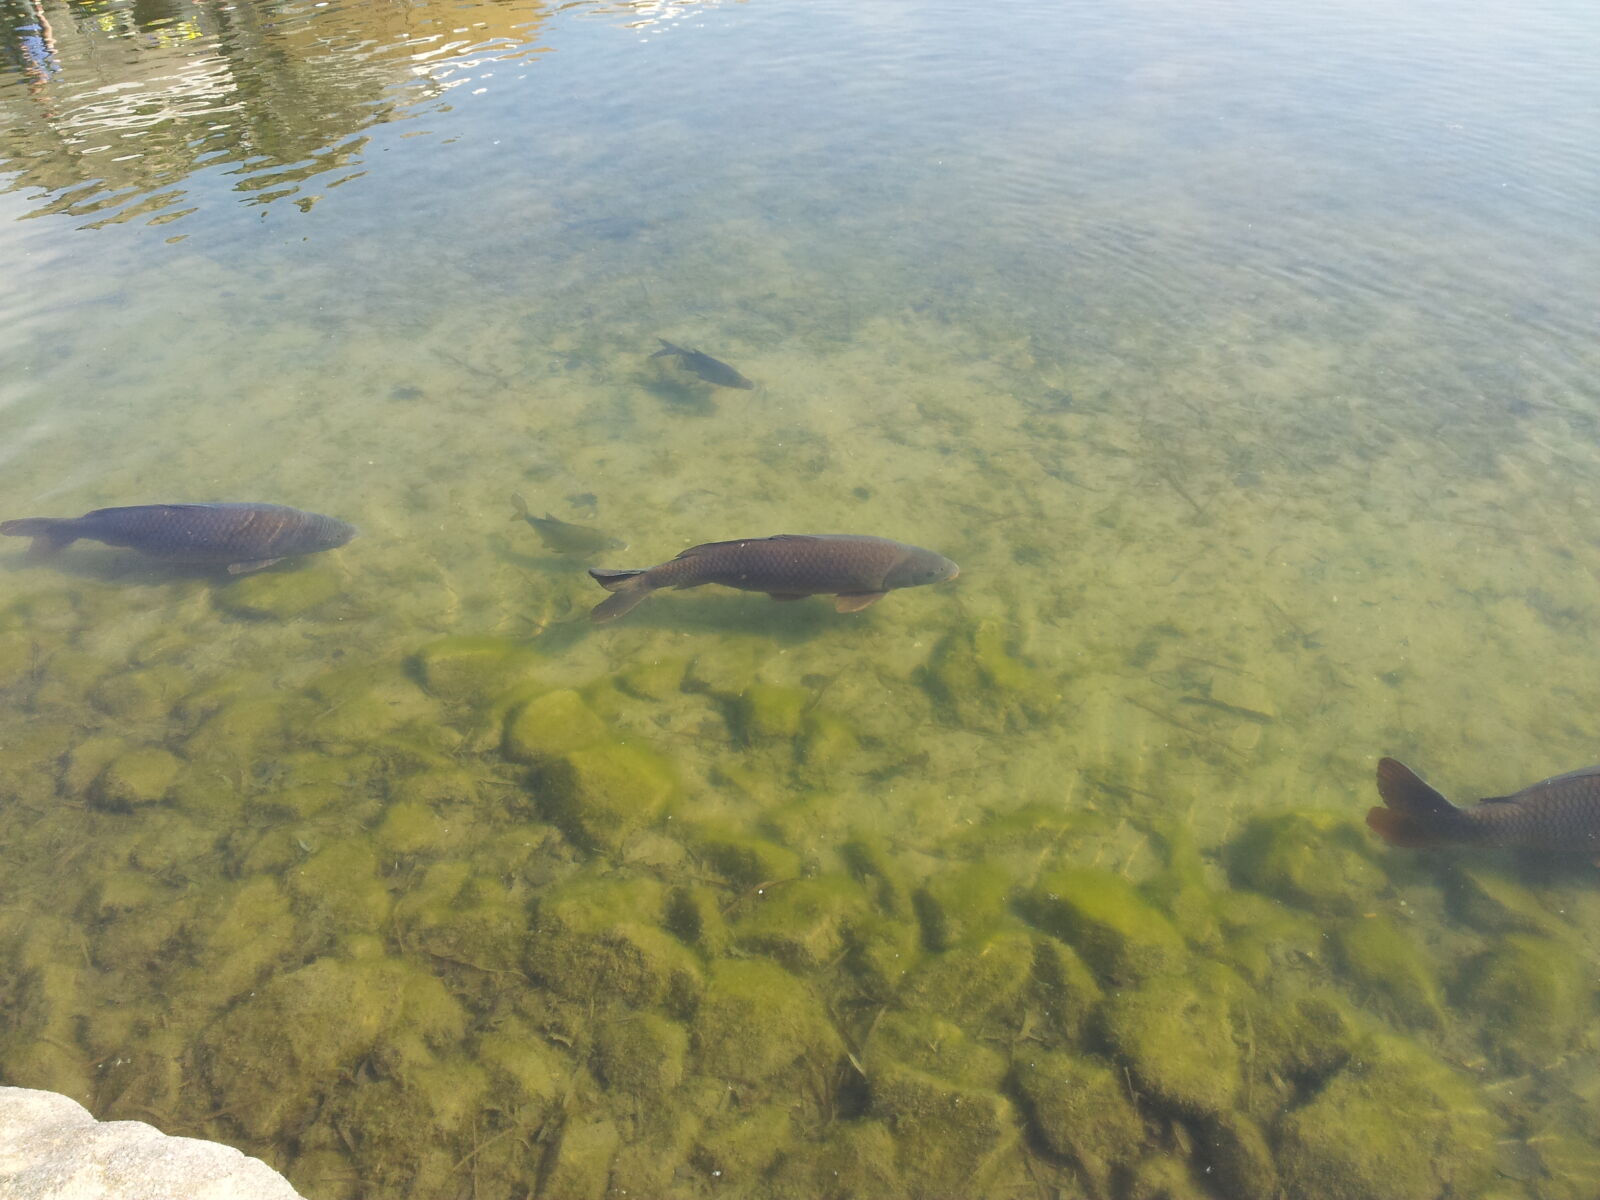 Samsung Galaxy S2 sample photo. Fish, lake, water photography